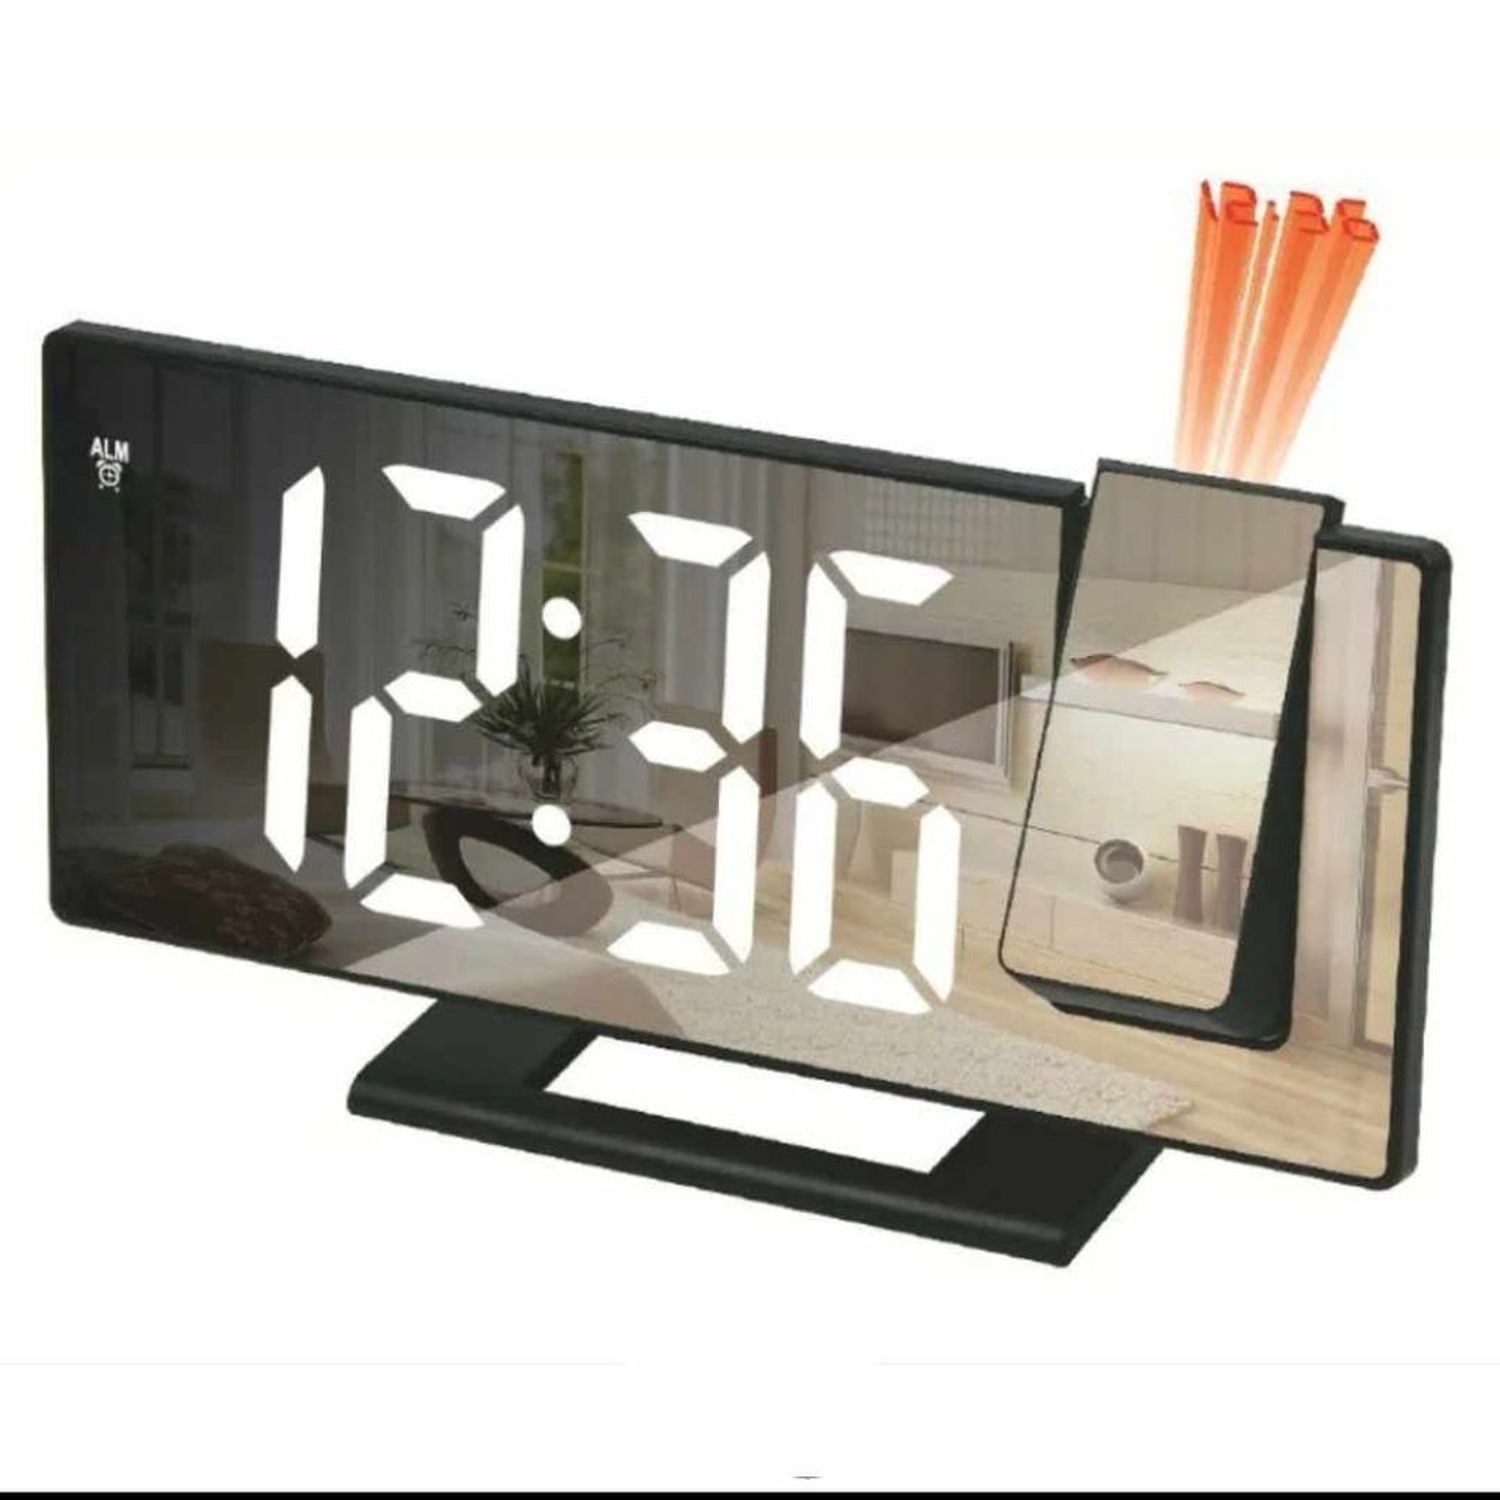 Reloj de Pared Digital Grande LED Tiempo Calendario Temperatura Humedad -  Promart